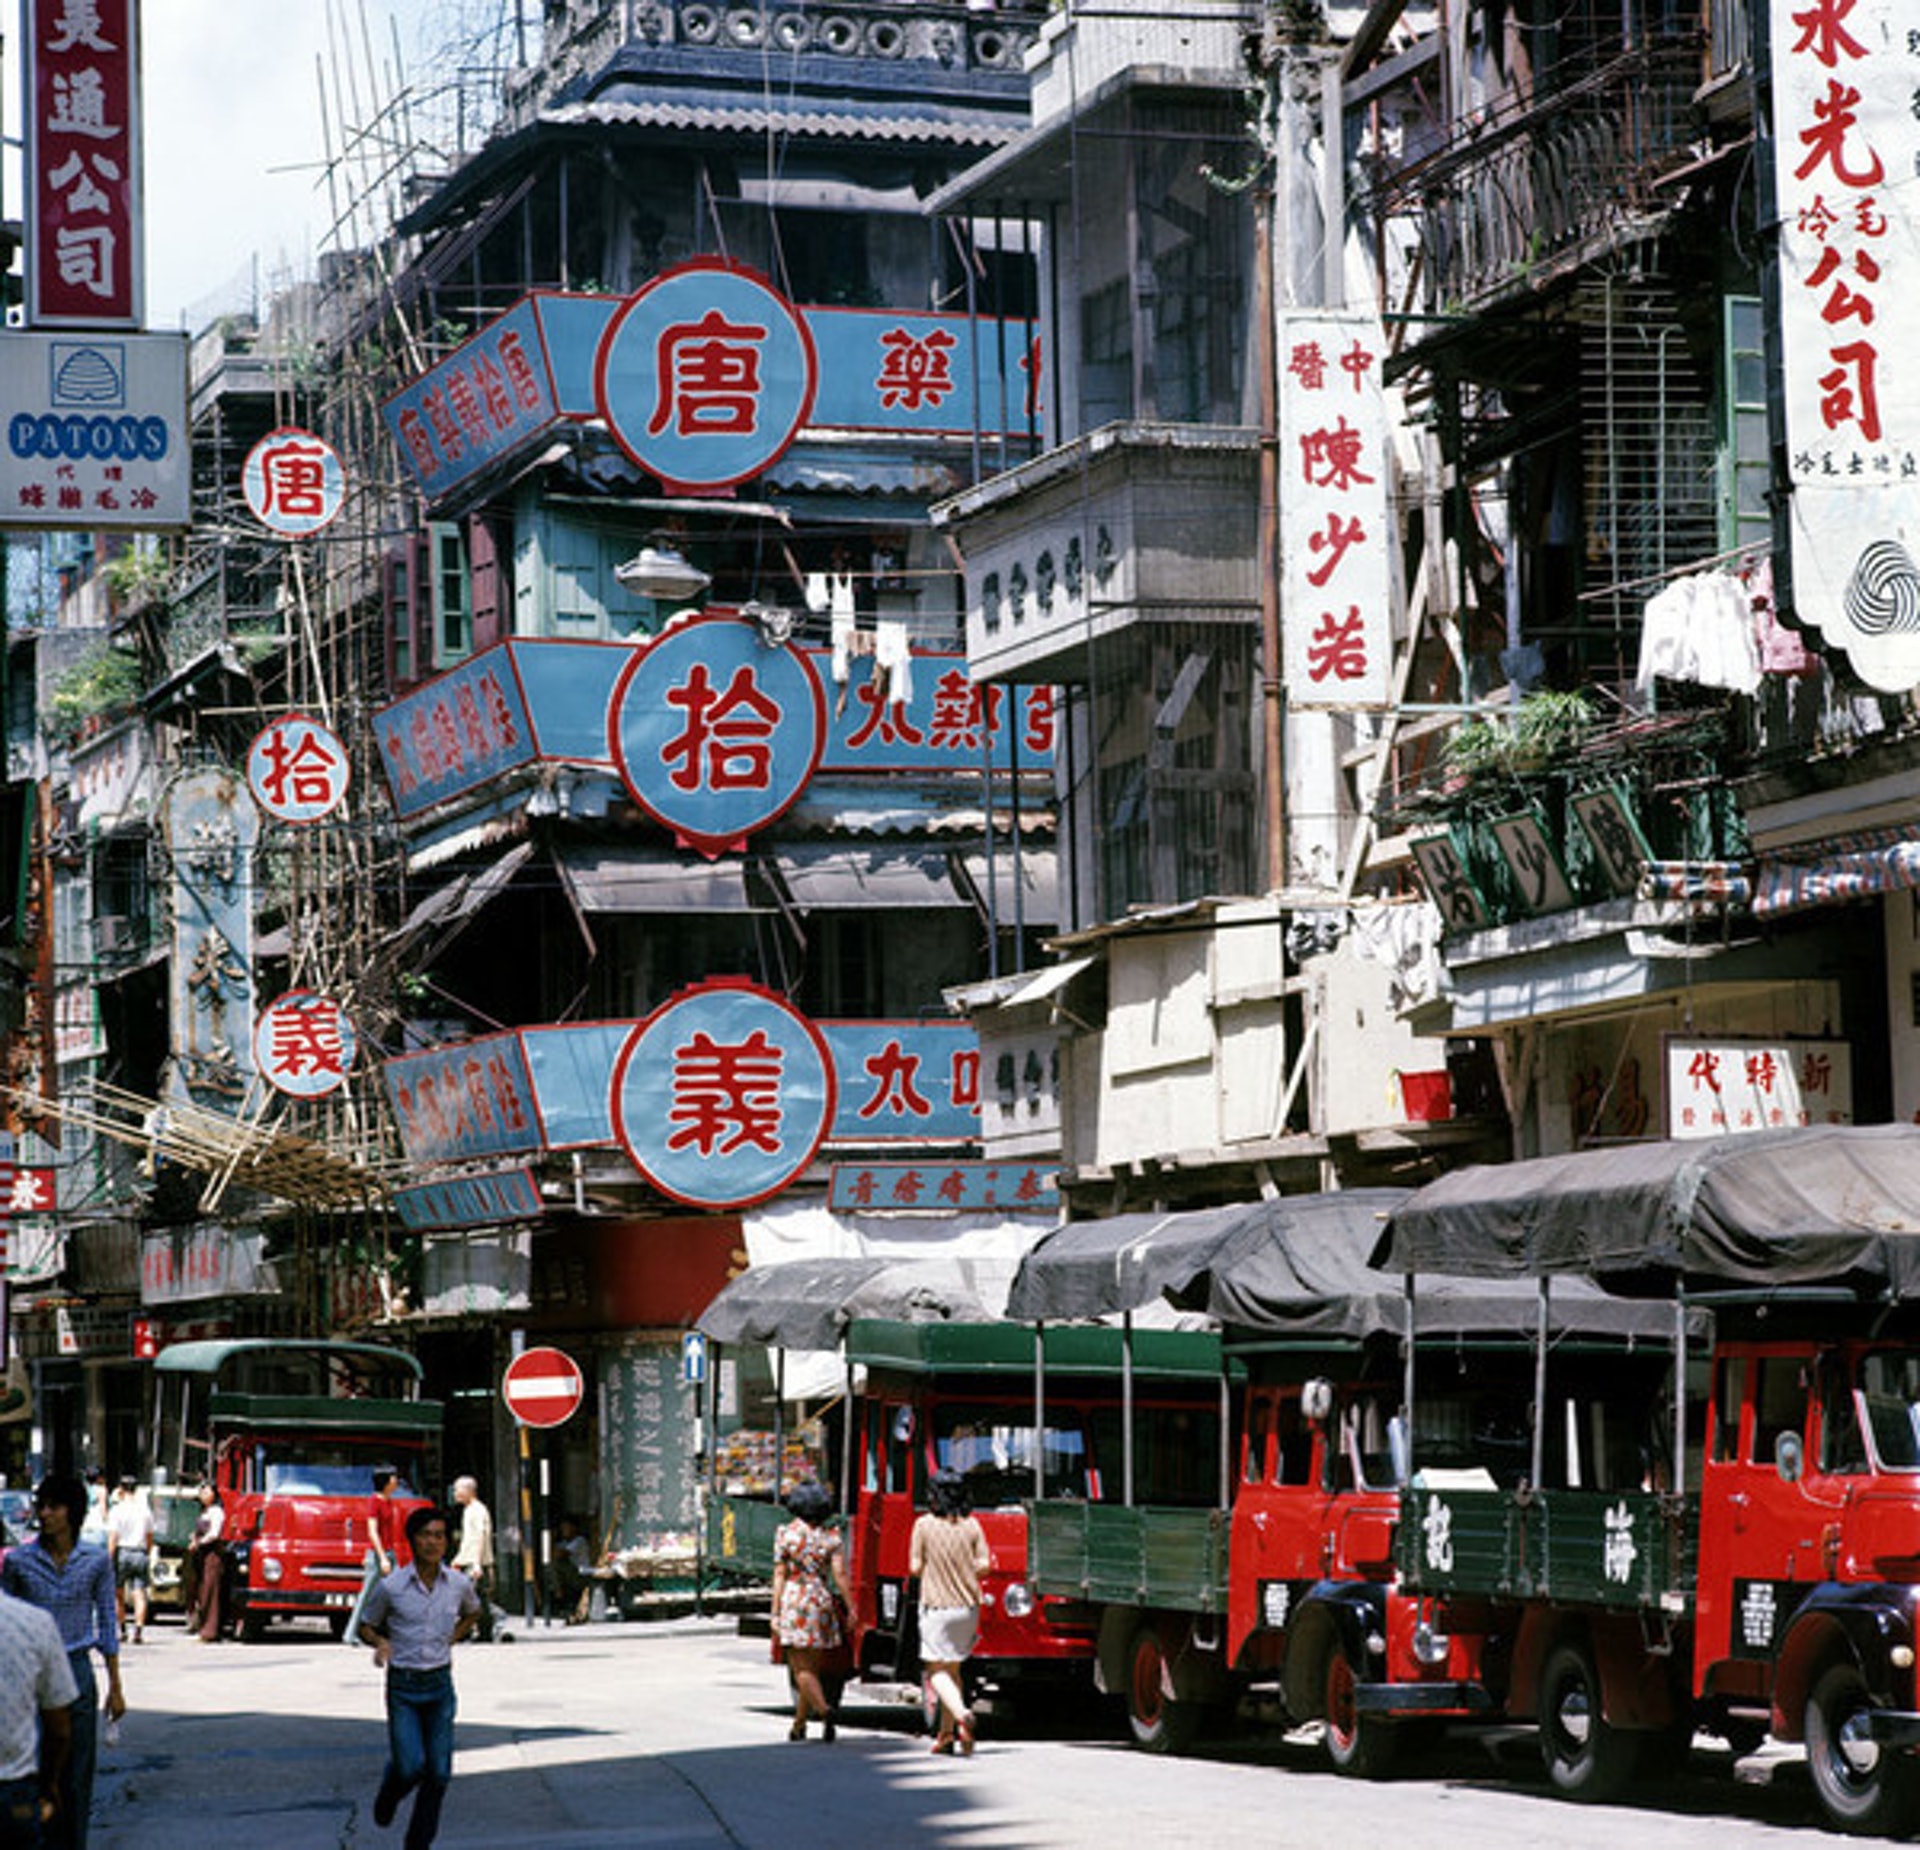 外国摄影师镜头下的老香港,街头百态,不同年代不一样的韵味